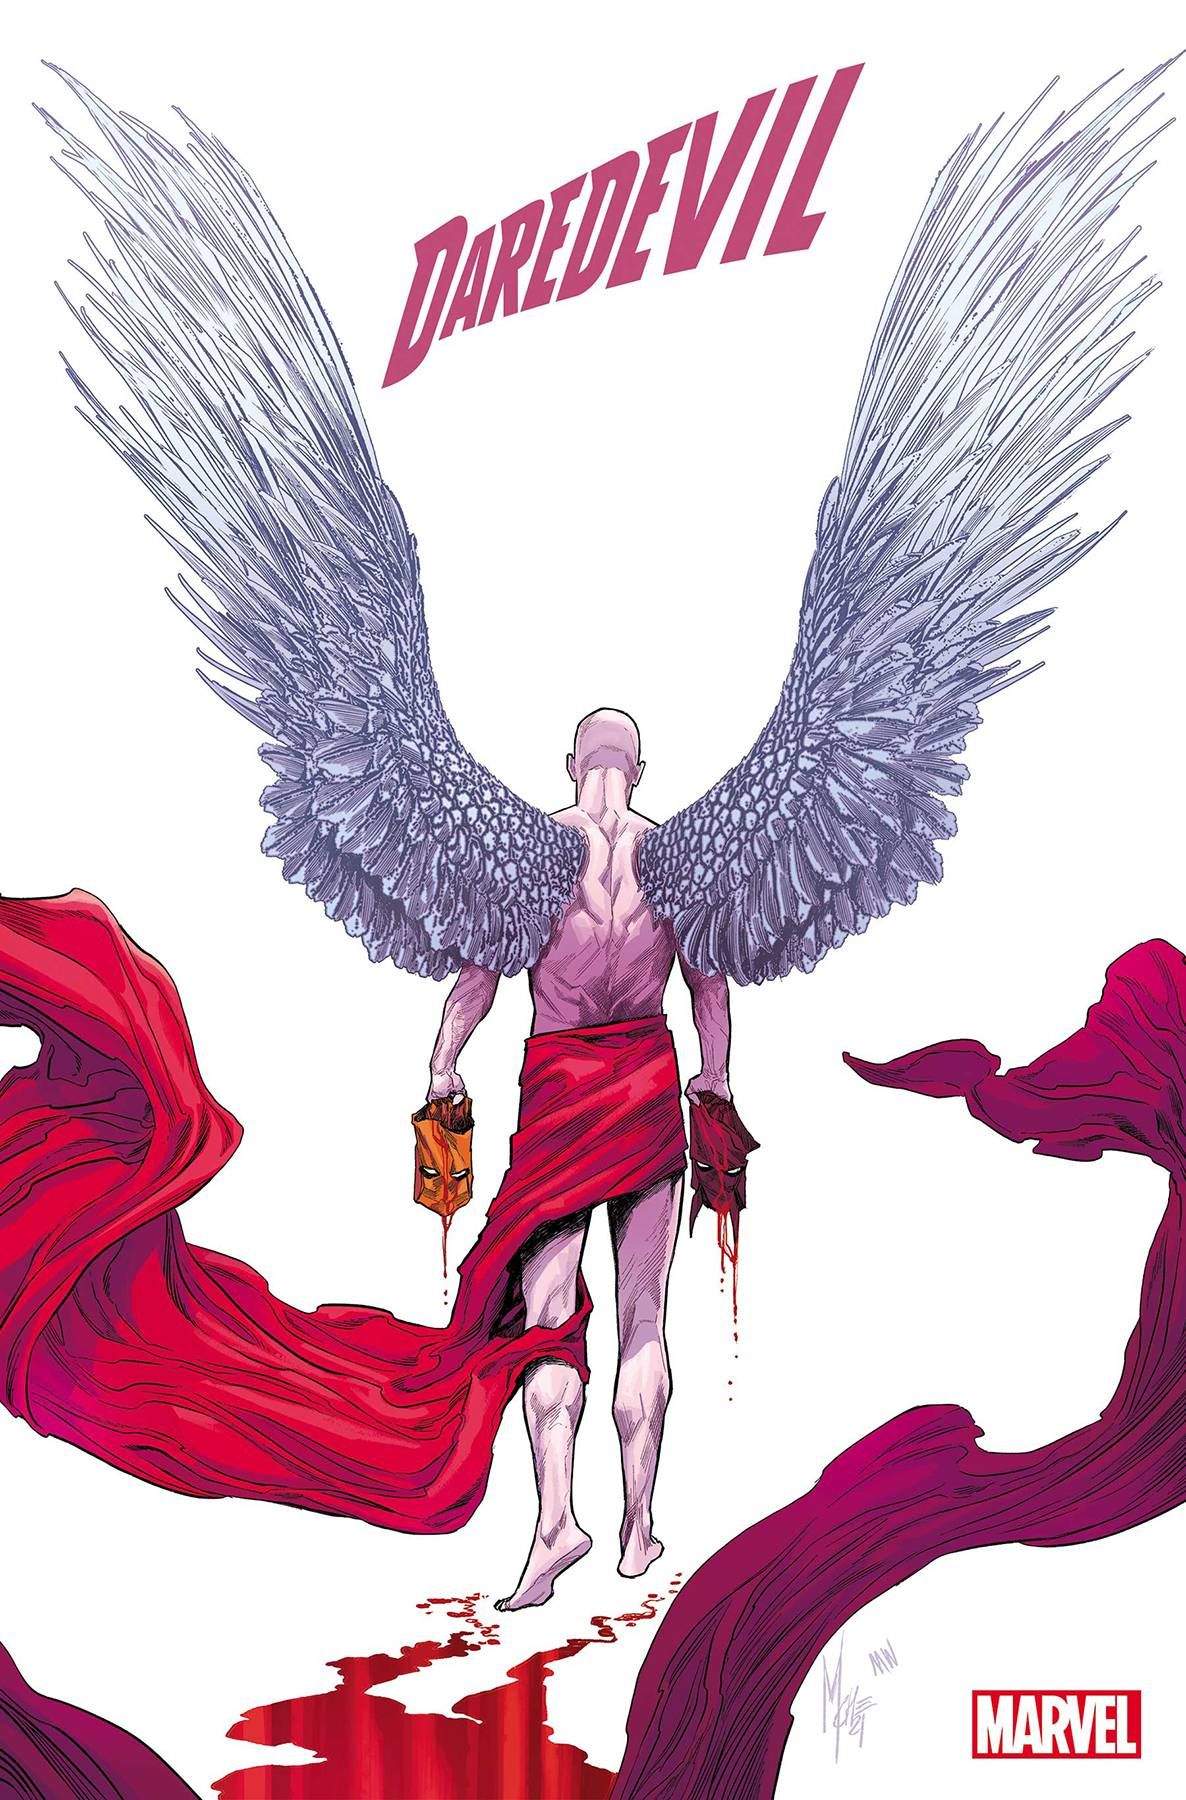 Daredevil #31 Comic